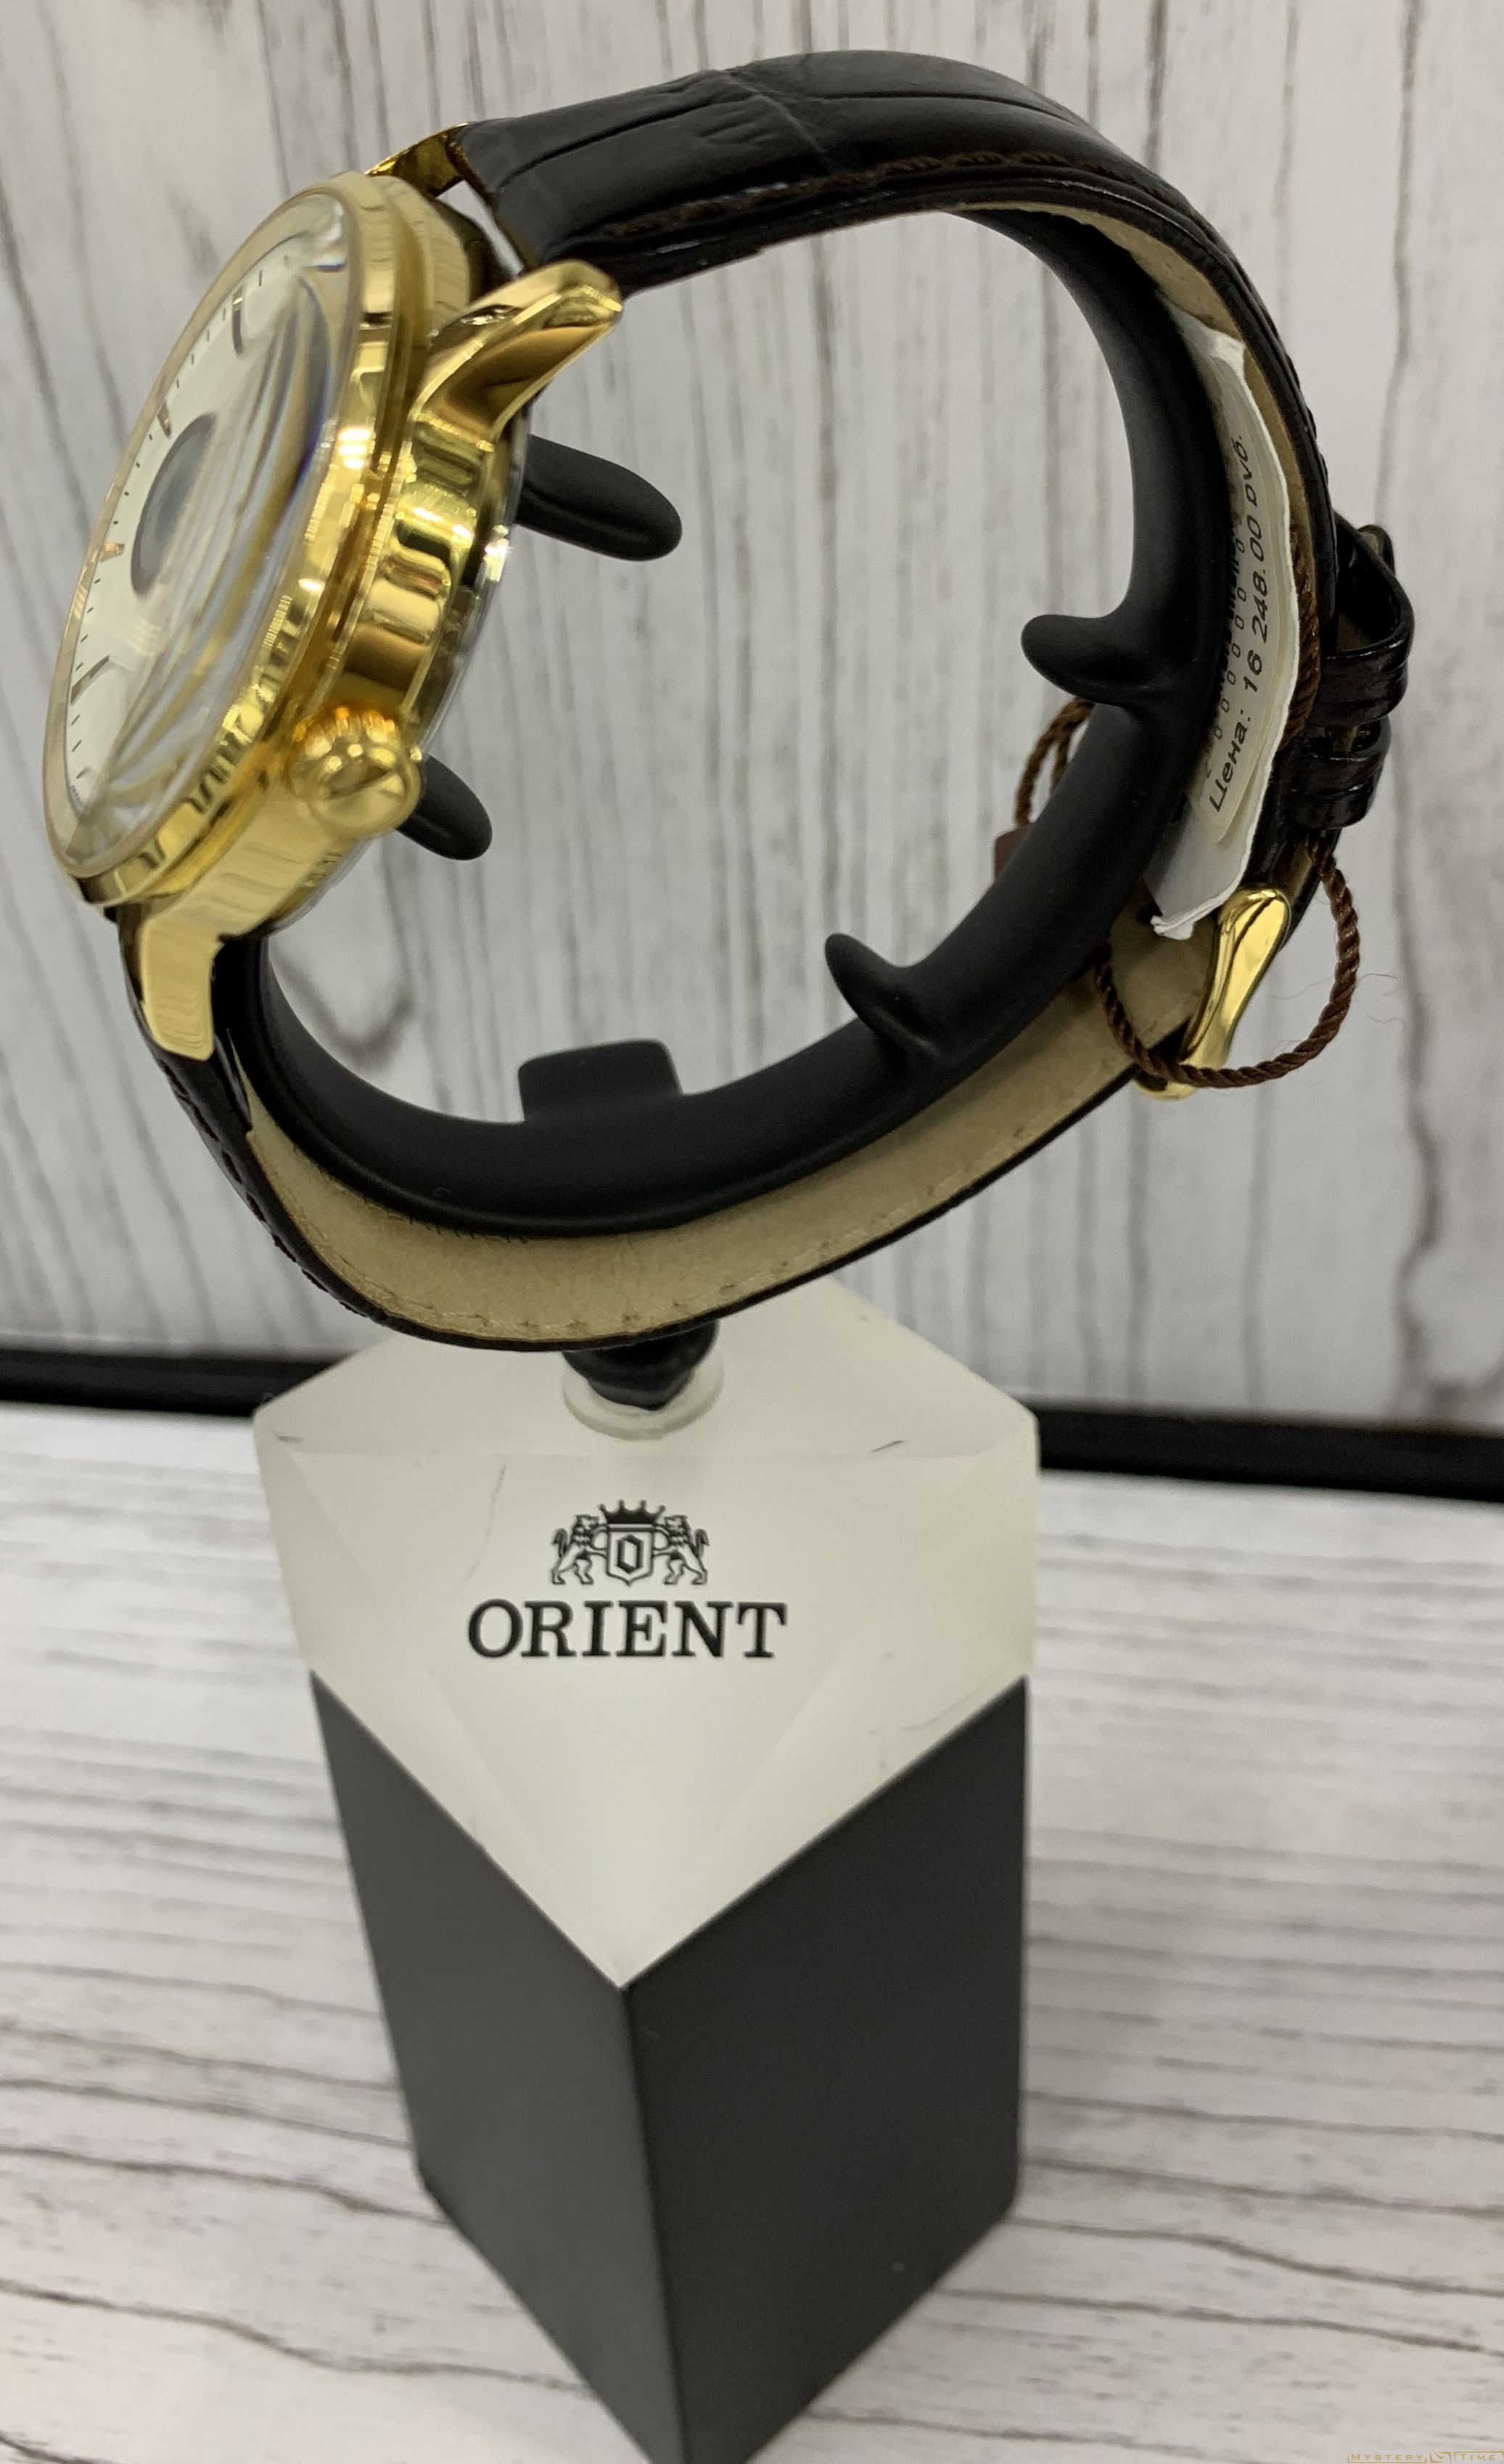 Orient DB08003W